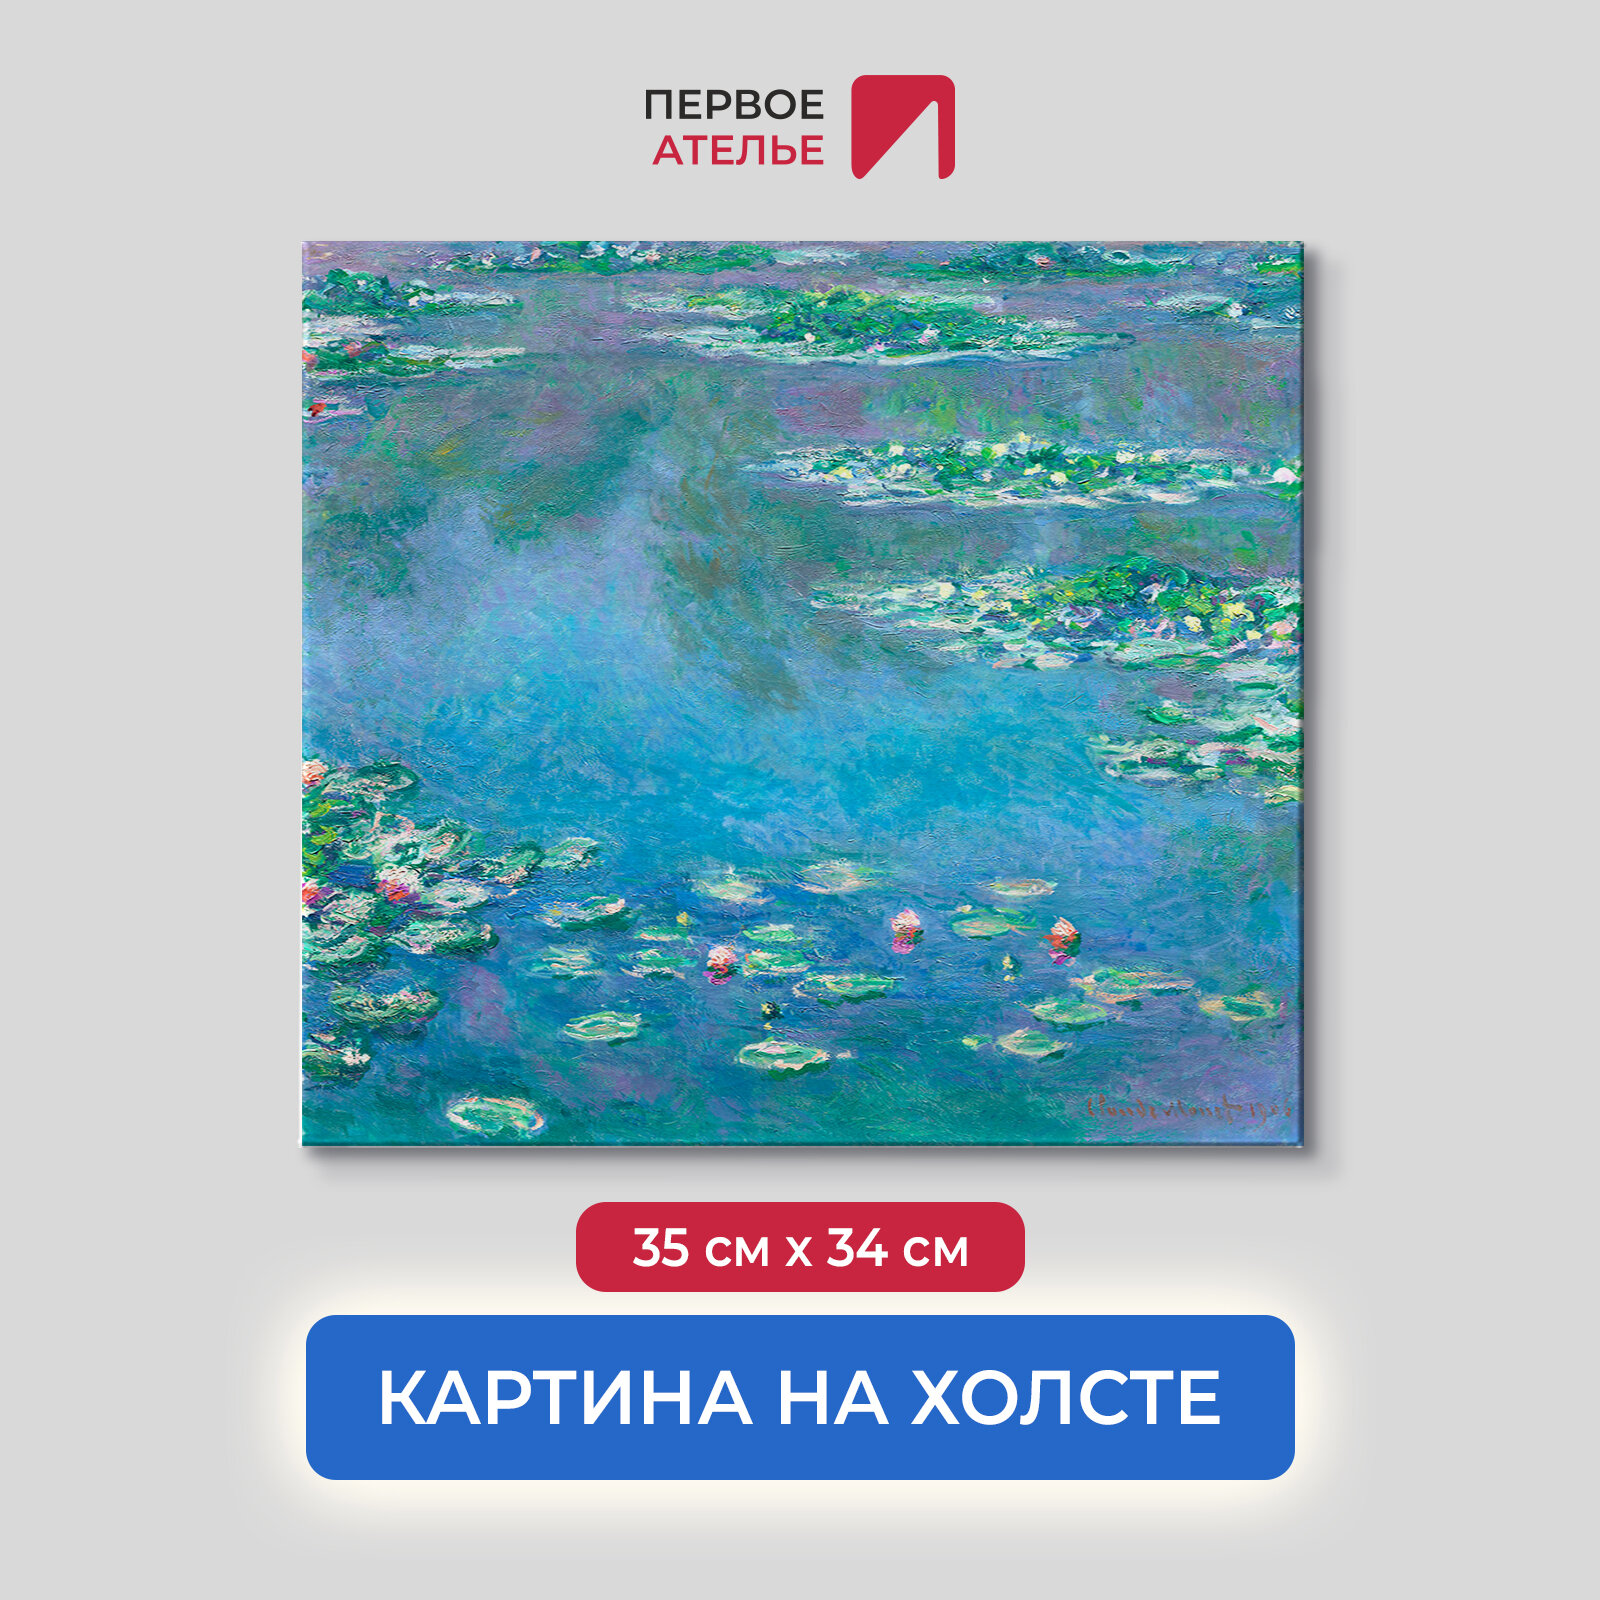 Картина репродукция Клода Моне "Водяные лилии, голубые" 35х34 см (ШхВ), на холсте